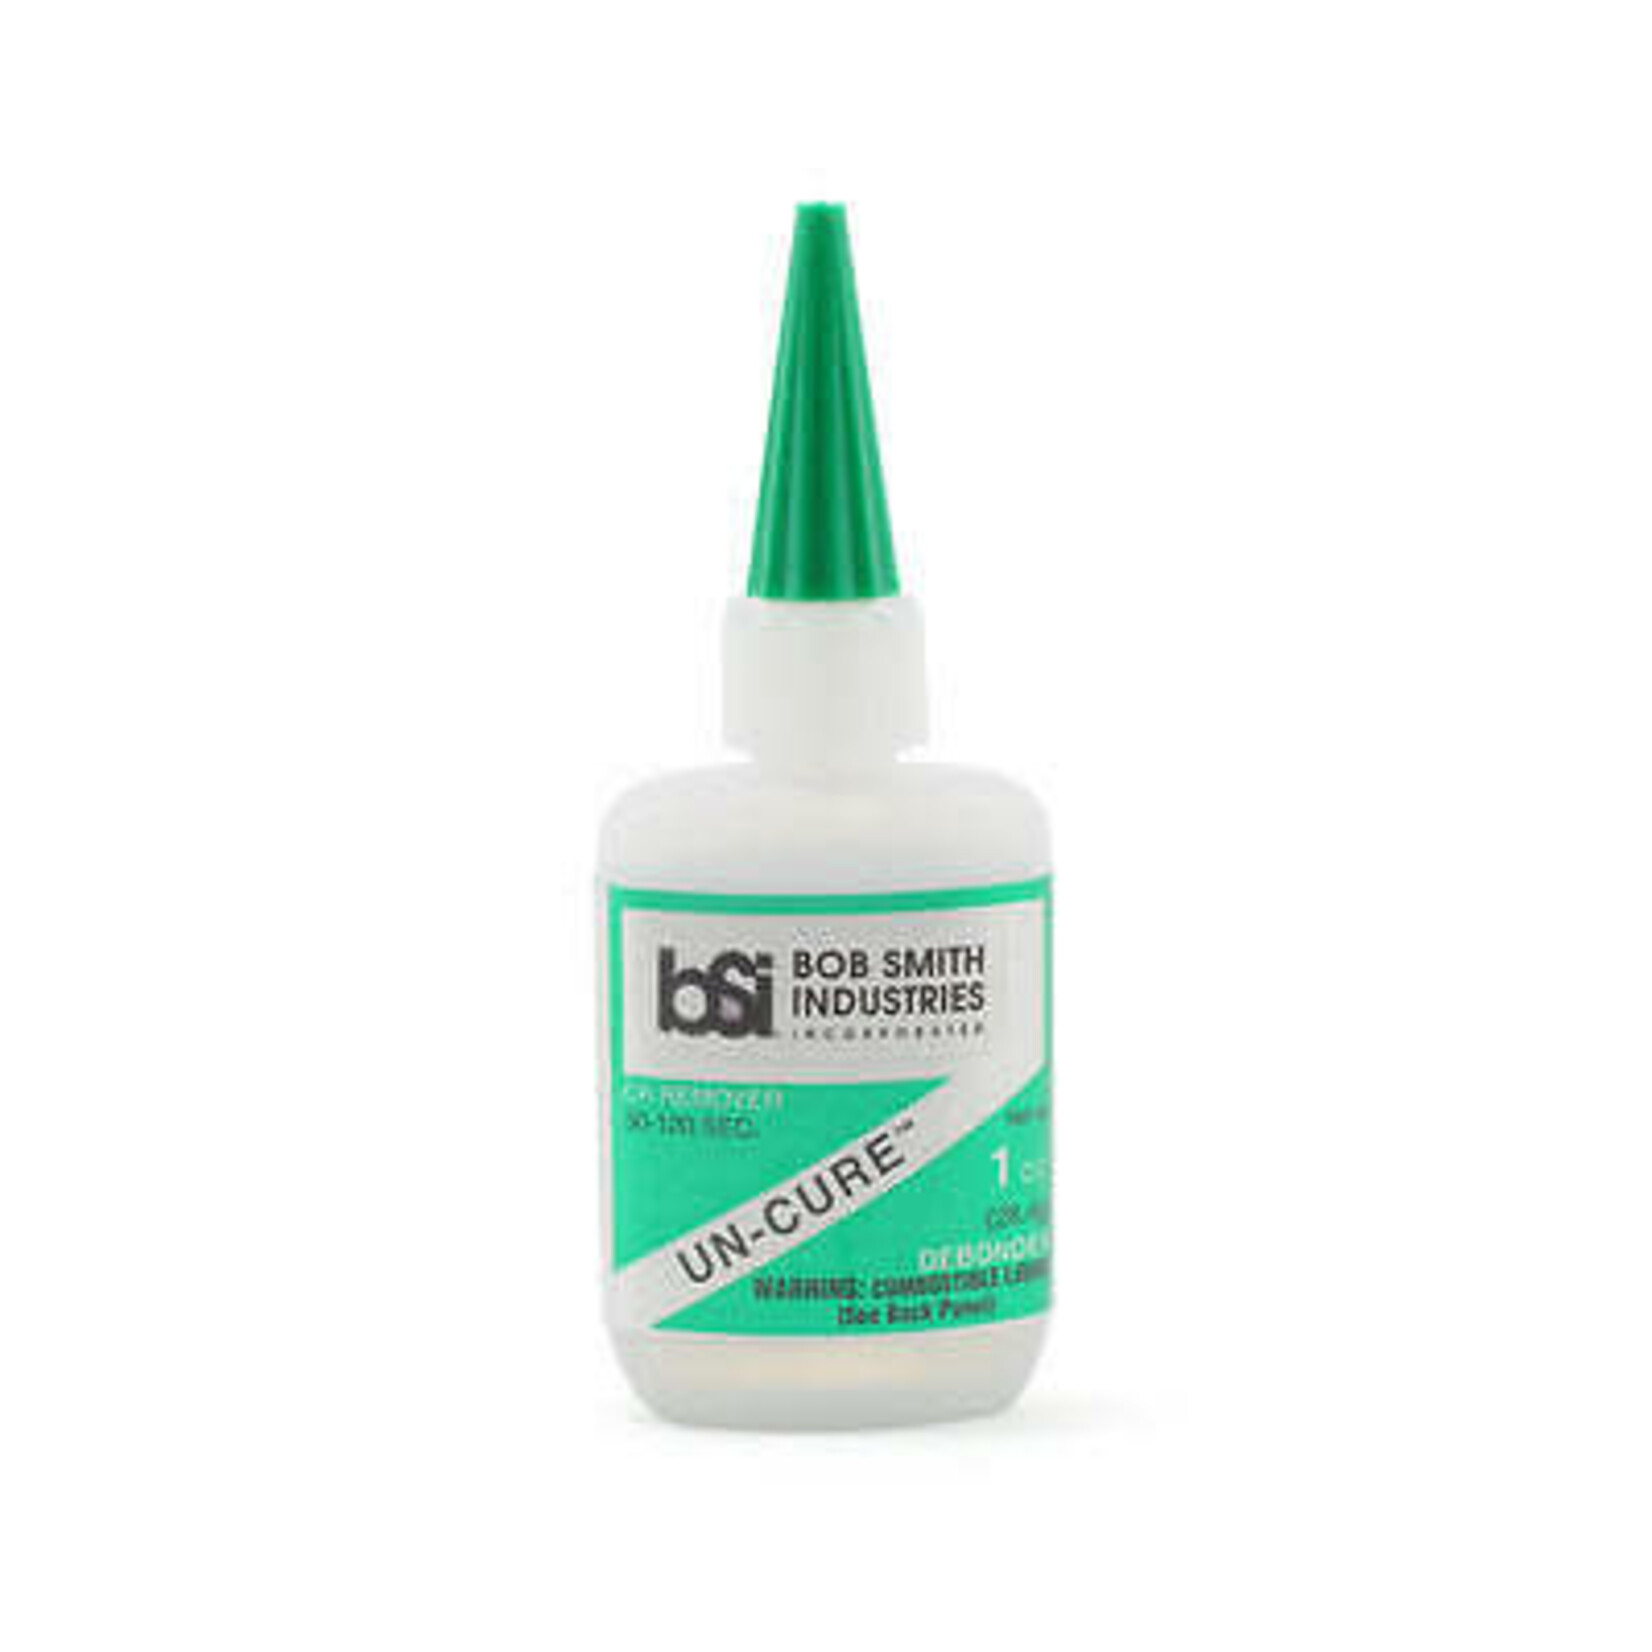 BSI Un-Cure Glue Debonder 1 Oz. (Green)